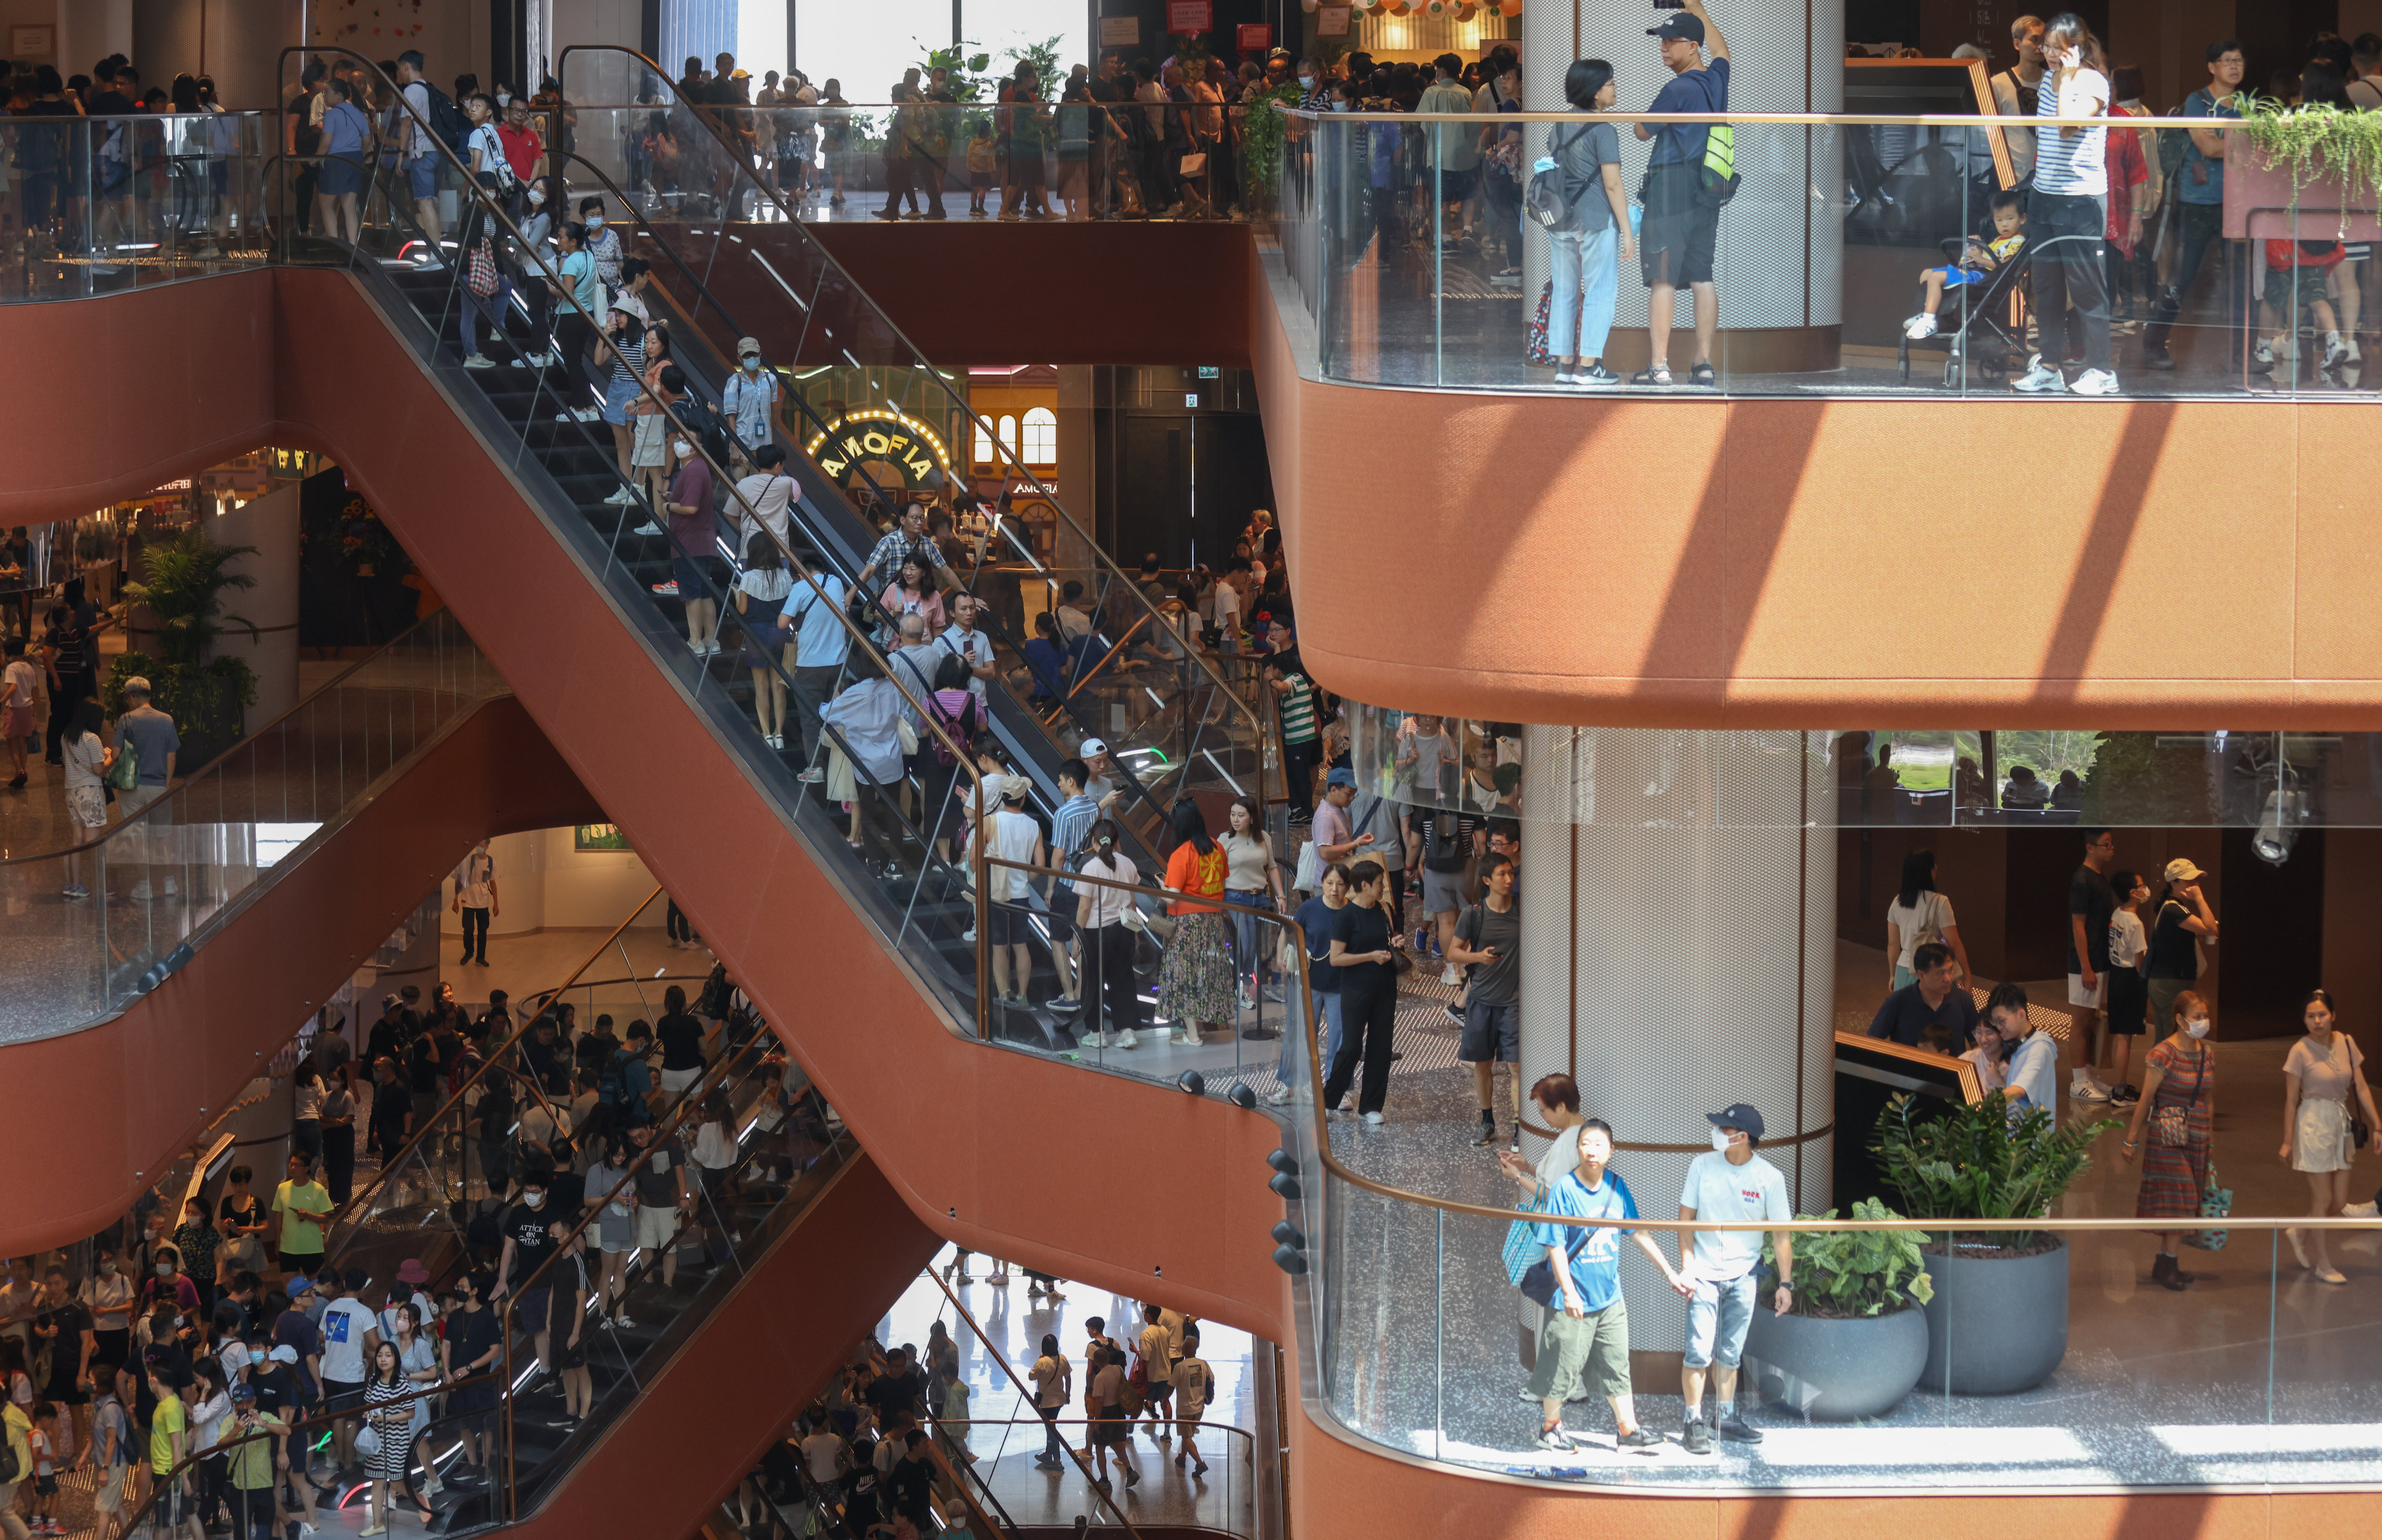 10 Best Shopping Malls in Hong Kong - Hong Kong's Most Popular